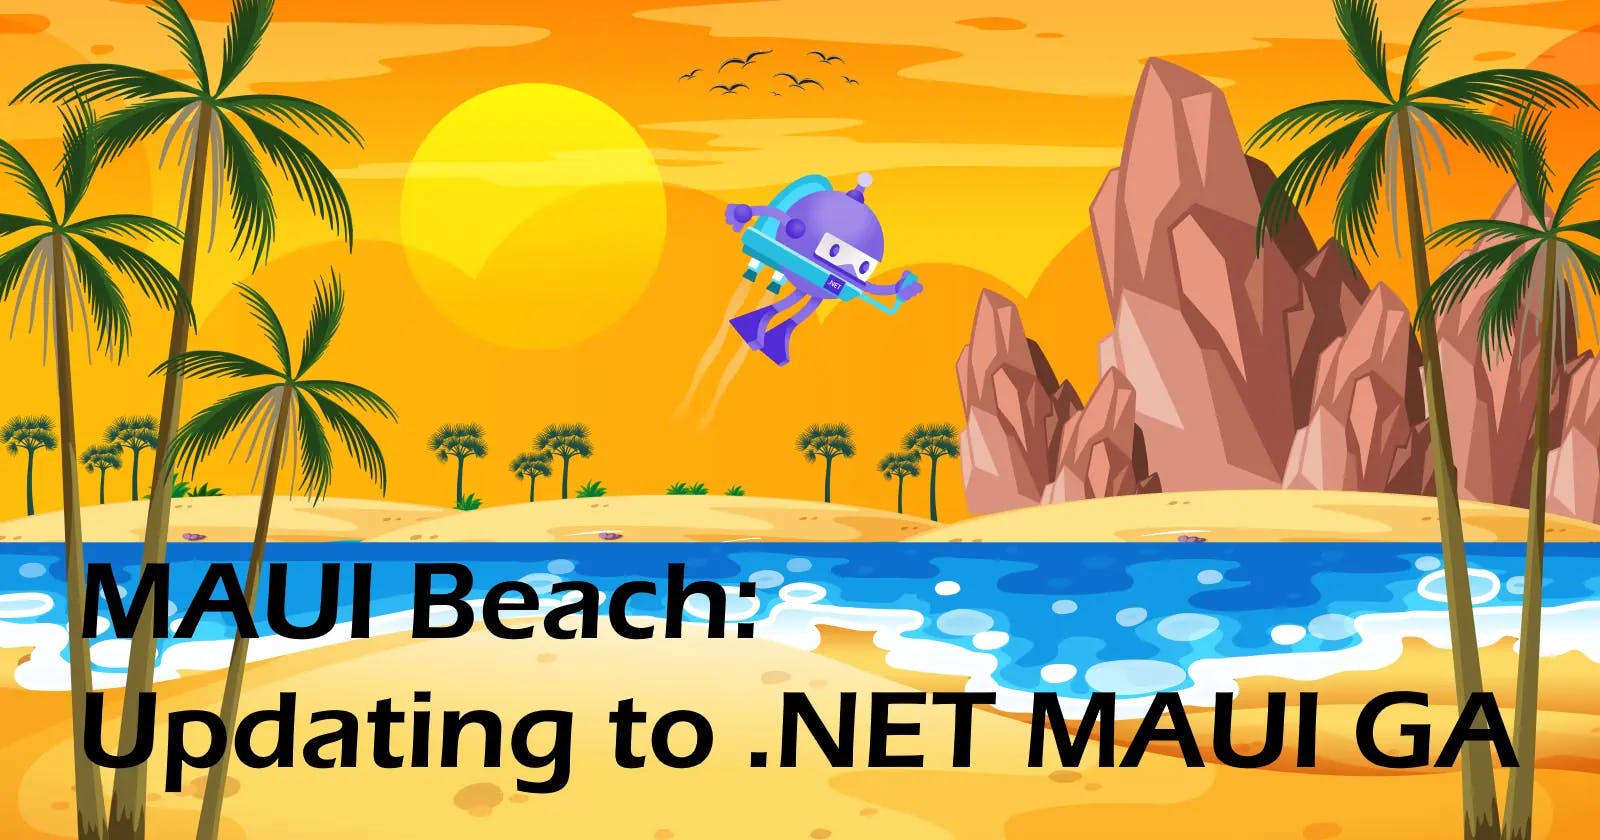 MAUI Beach - Updating to .NET MAUI GA